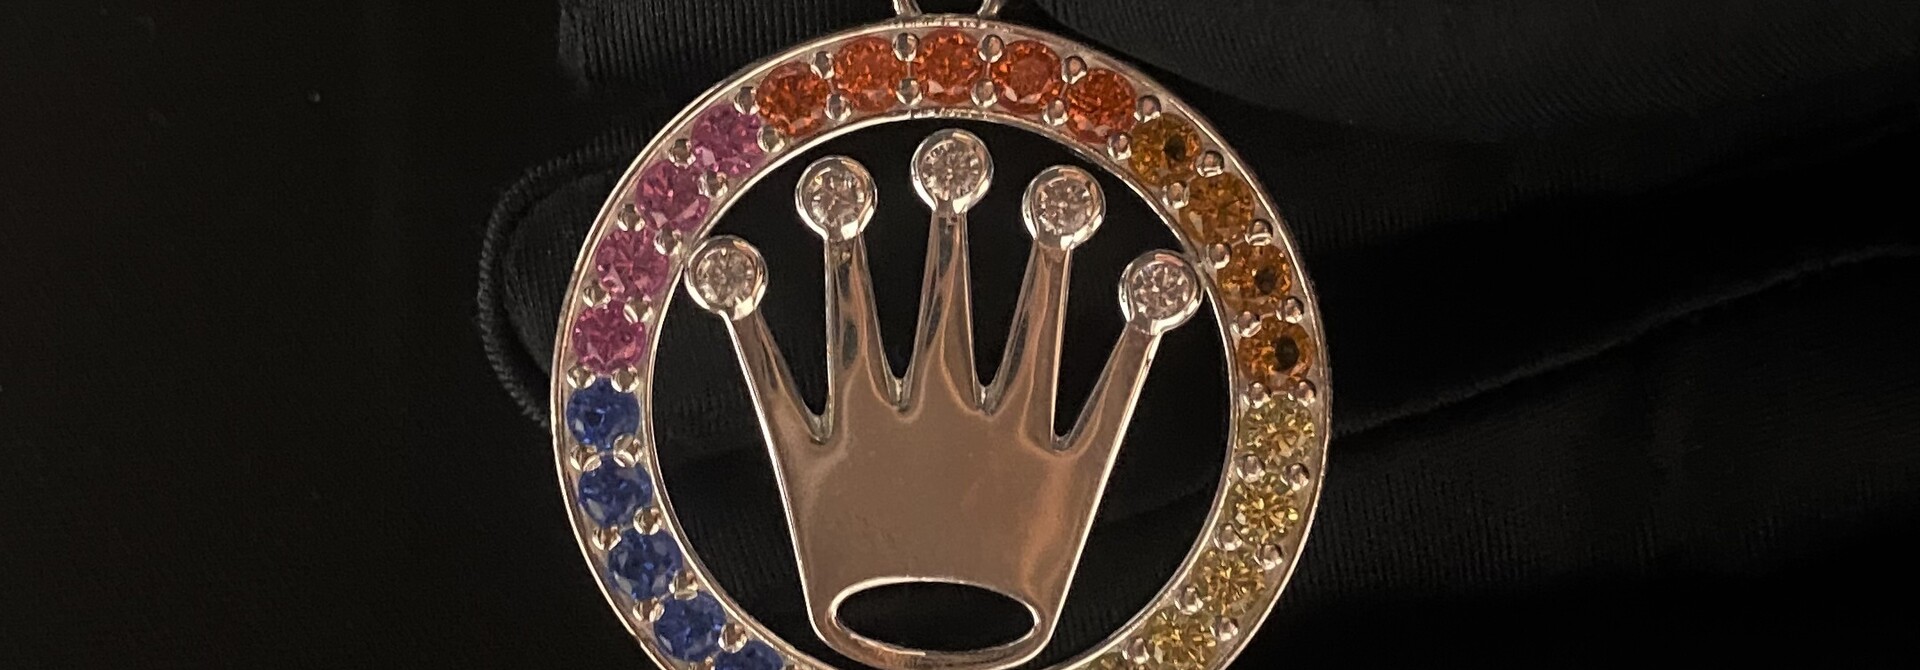 Hanger zilver rond Roleks kroon met regenboog kleurige zirkonia's